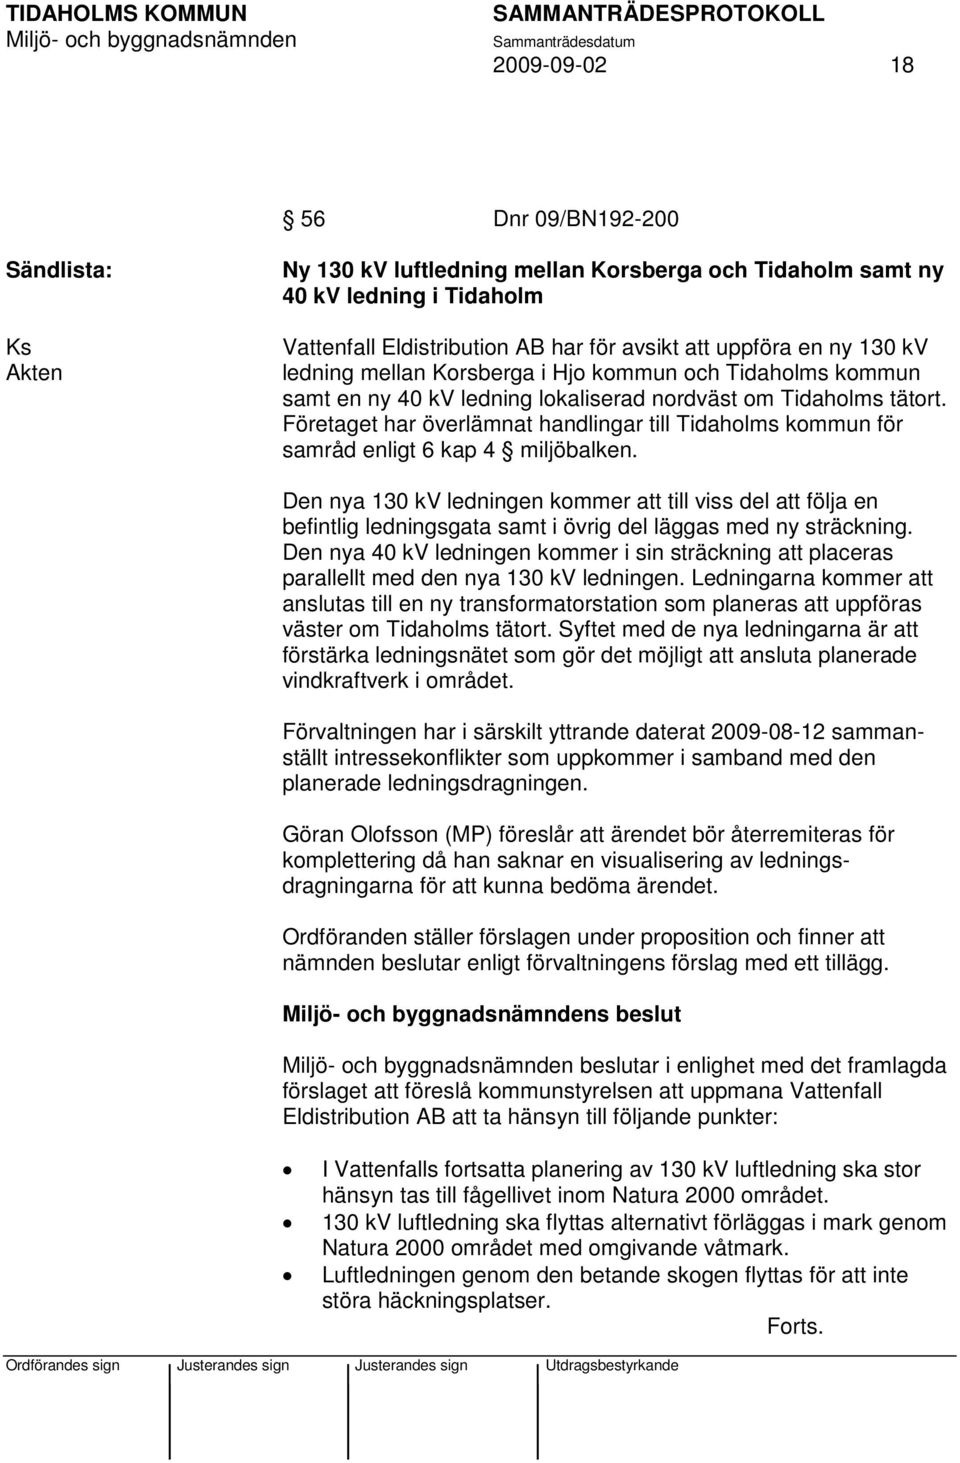 Företaget har överlämnat handlingar till Tidaholms kommun för samråd enligt 6 kap 4 miljöbalken.